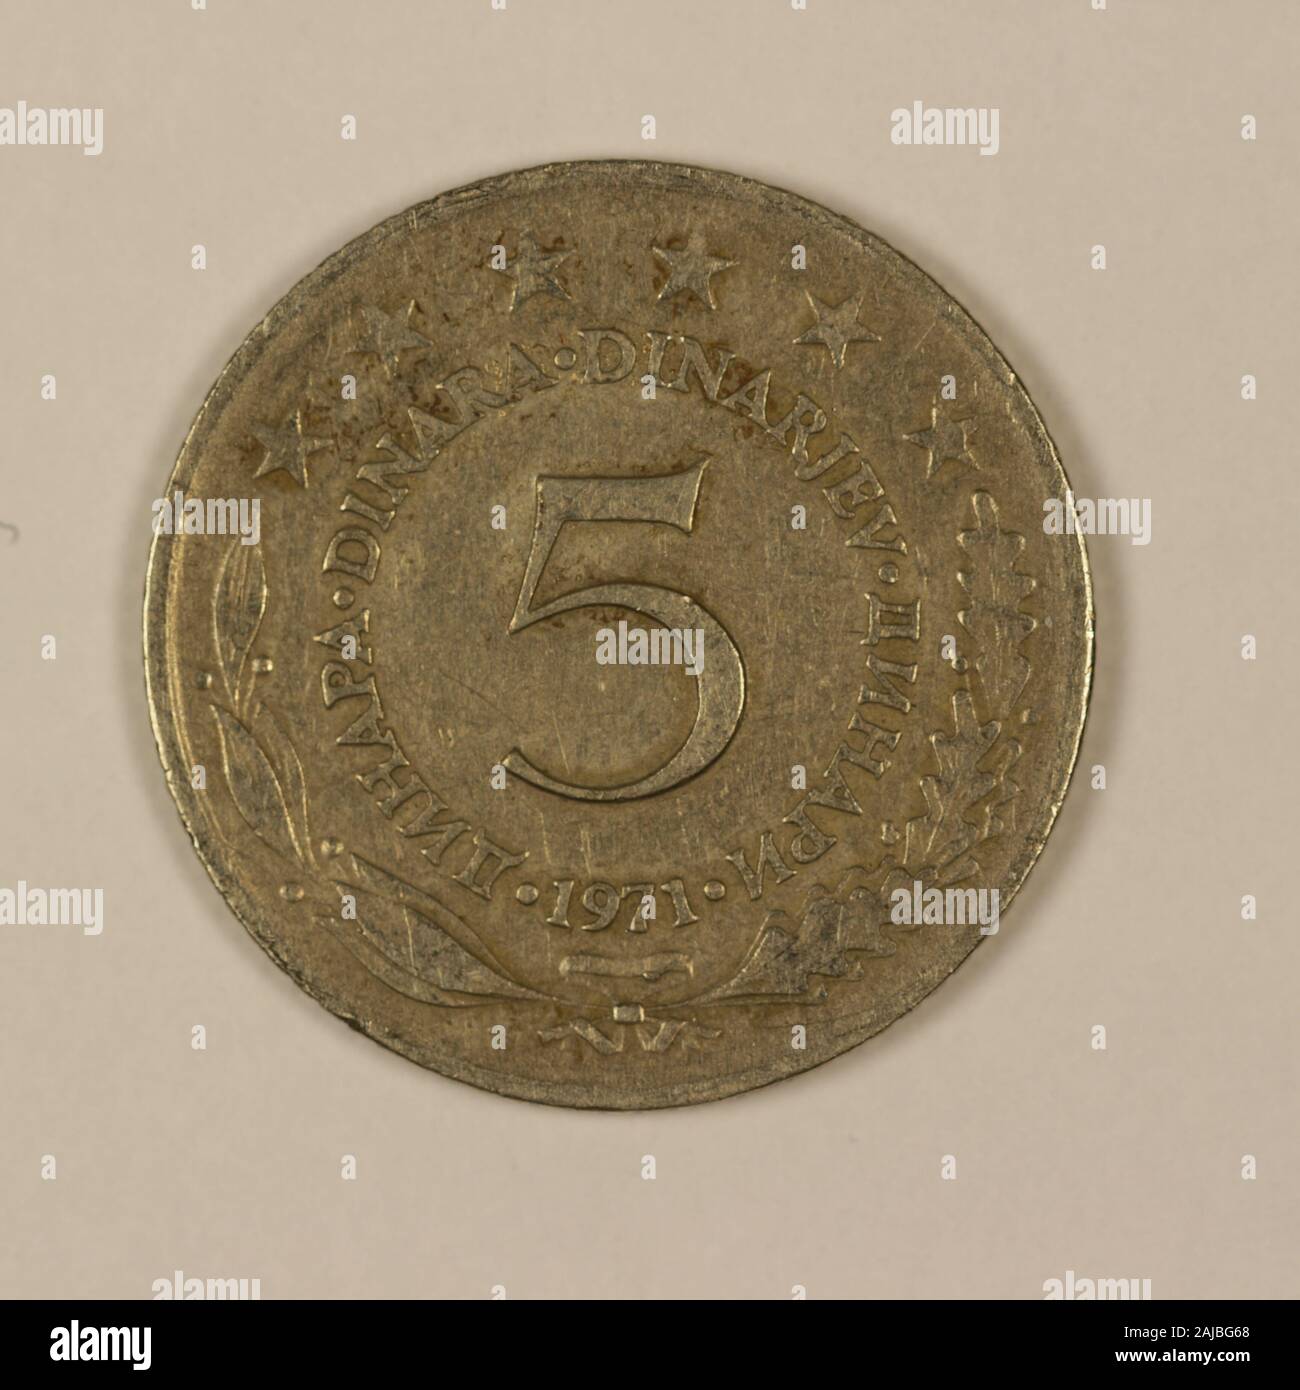 Vorderseite einer ehemaligen Jugoslawischen 5 Dinar Münze Stock Photo